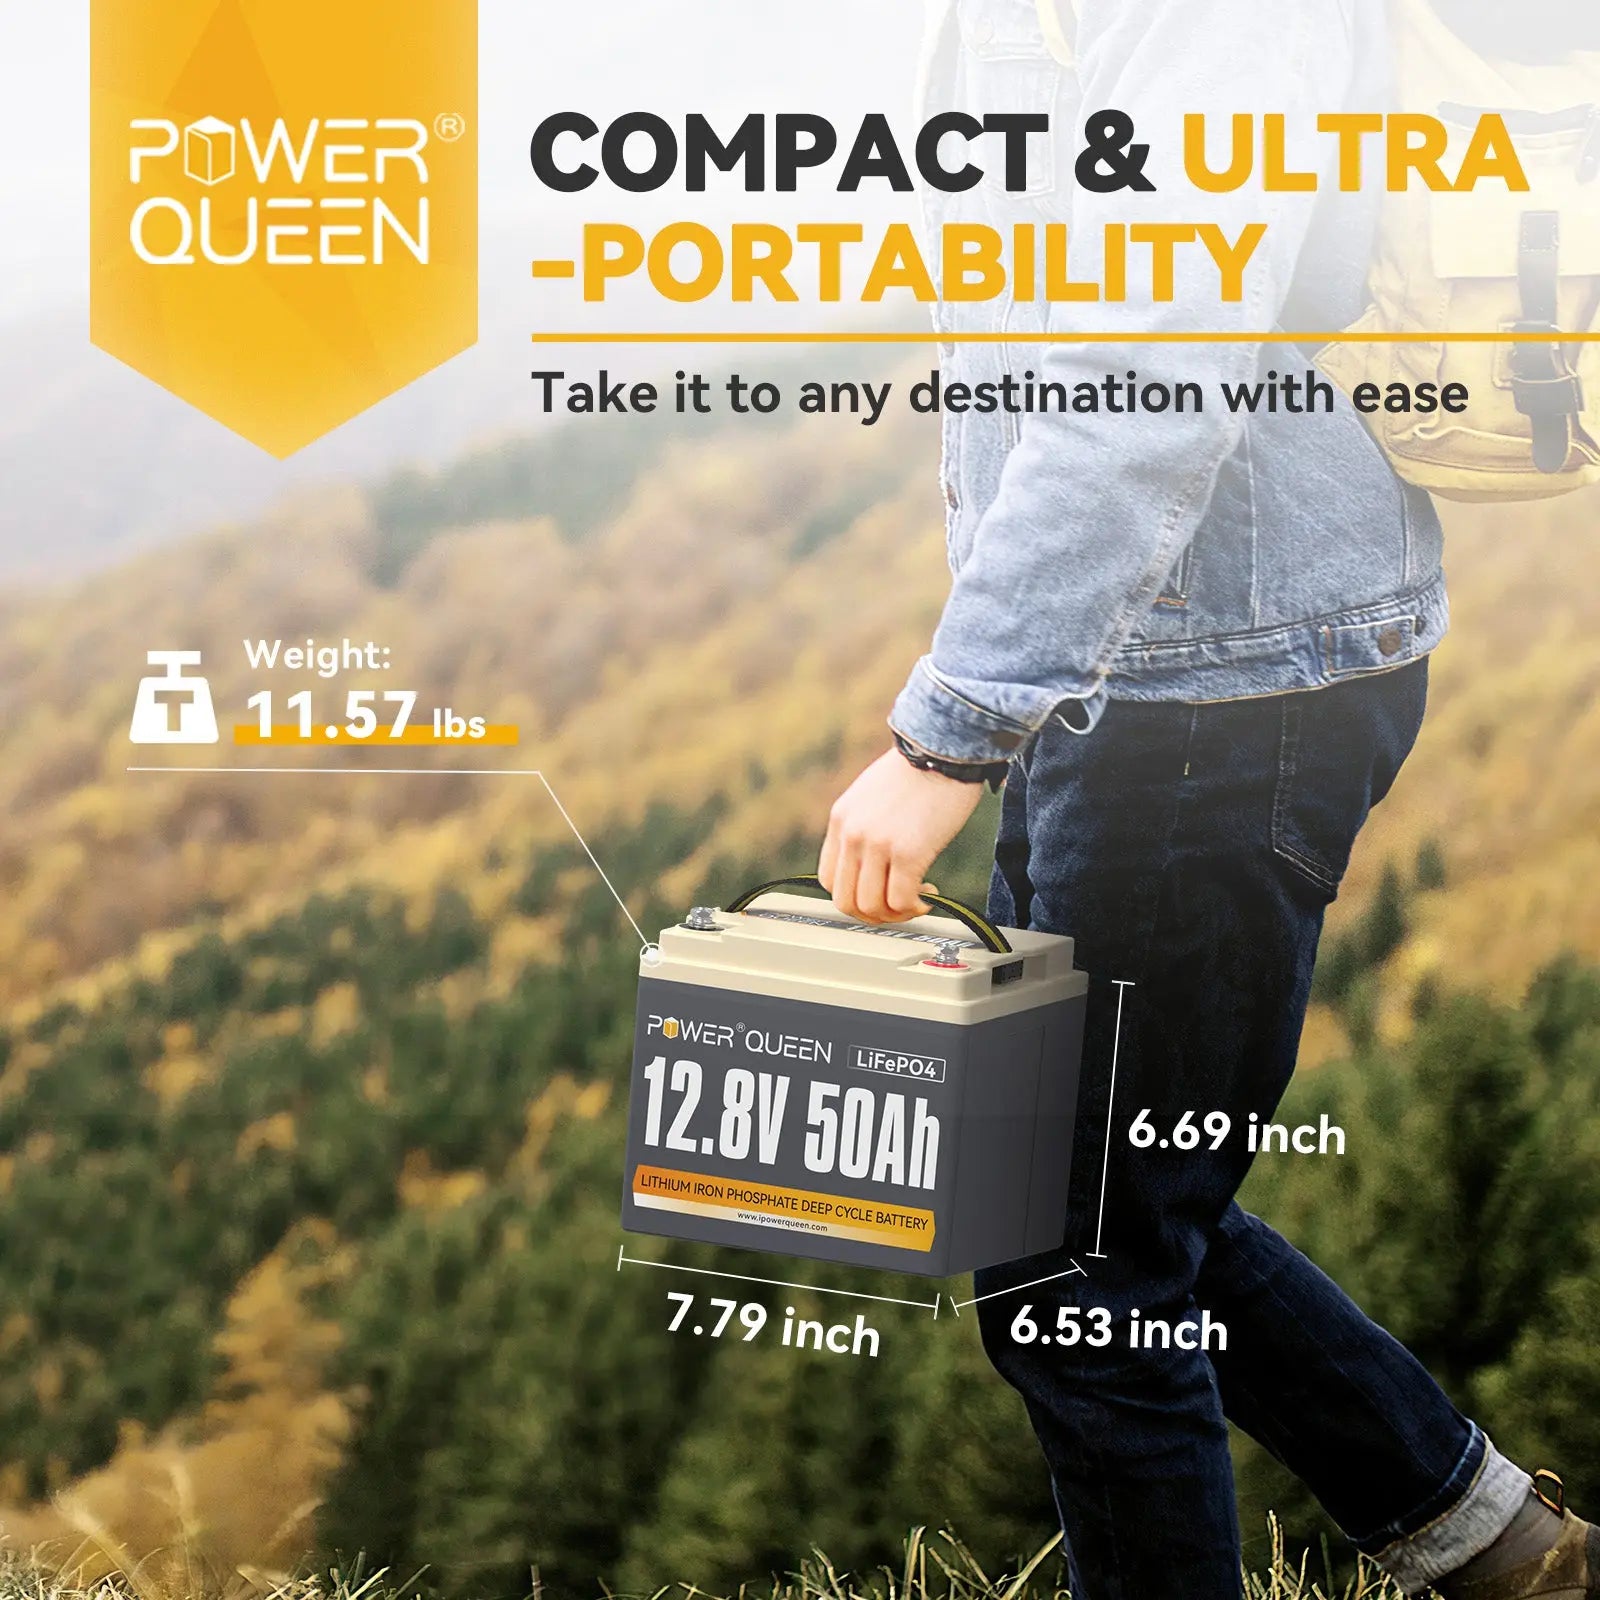 Power Queen 12.8V 50Ah LiFePO4 Battery, Built-in 50A BMS Power Queen